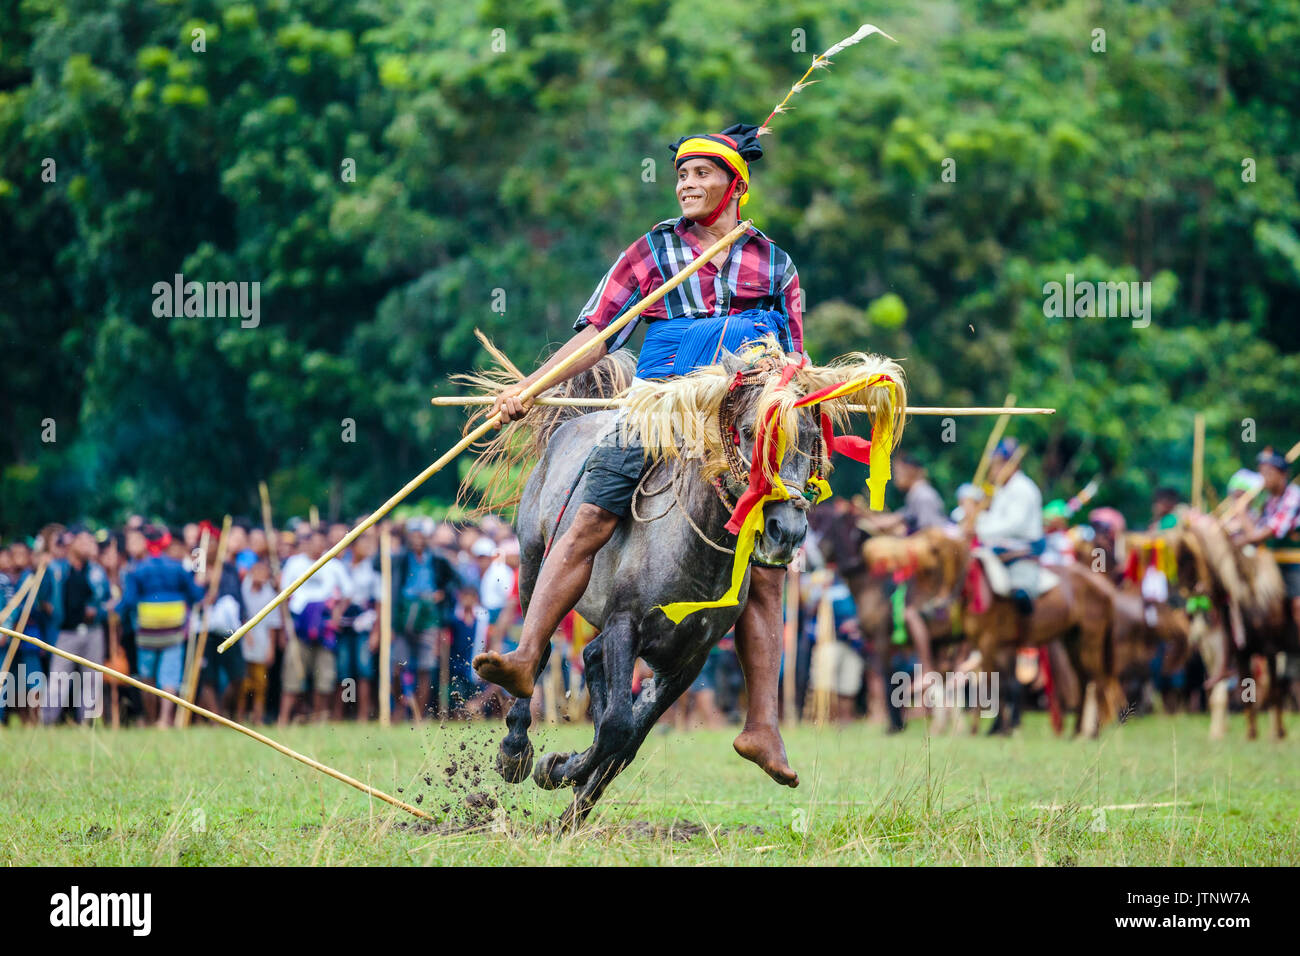 Homme avec une lance qui participent au Festival Pasola, l'île de Sumba, Indonésie Banque D'Images